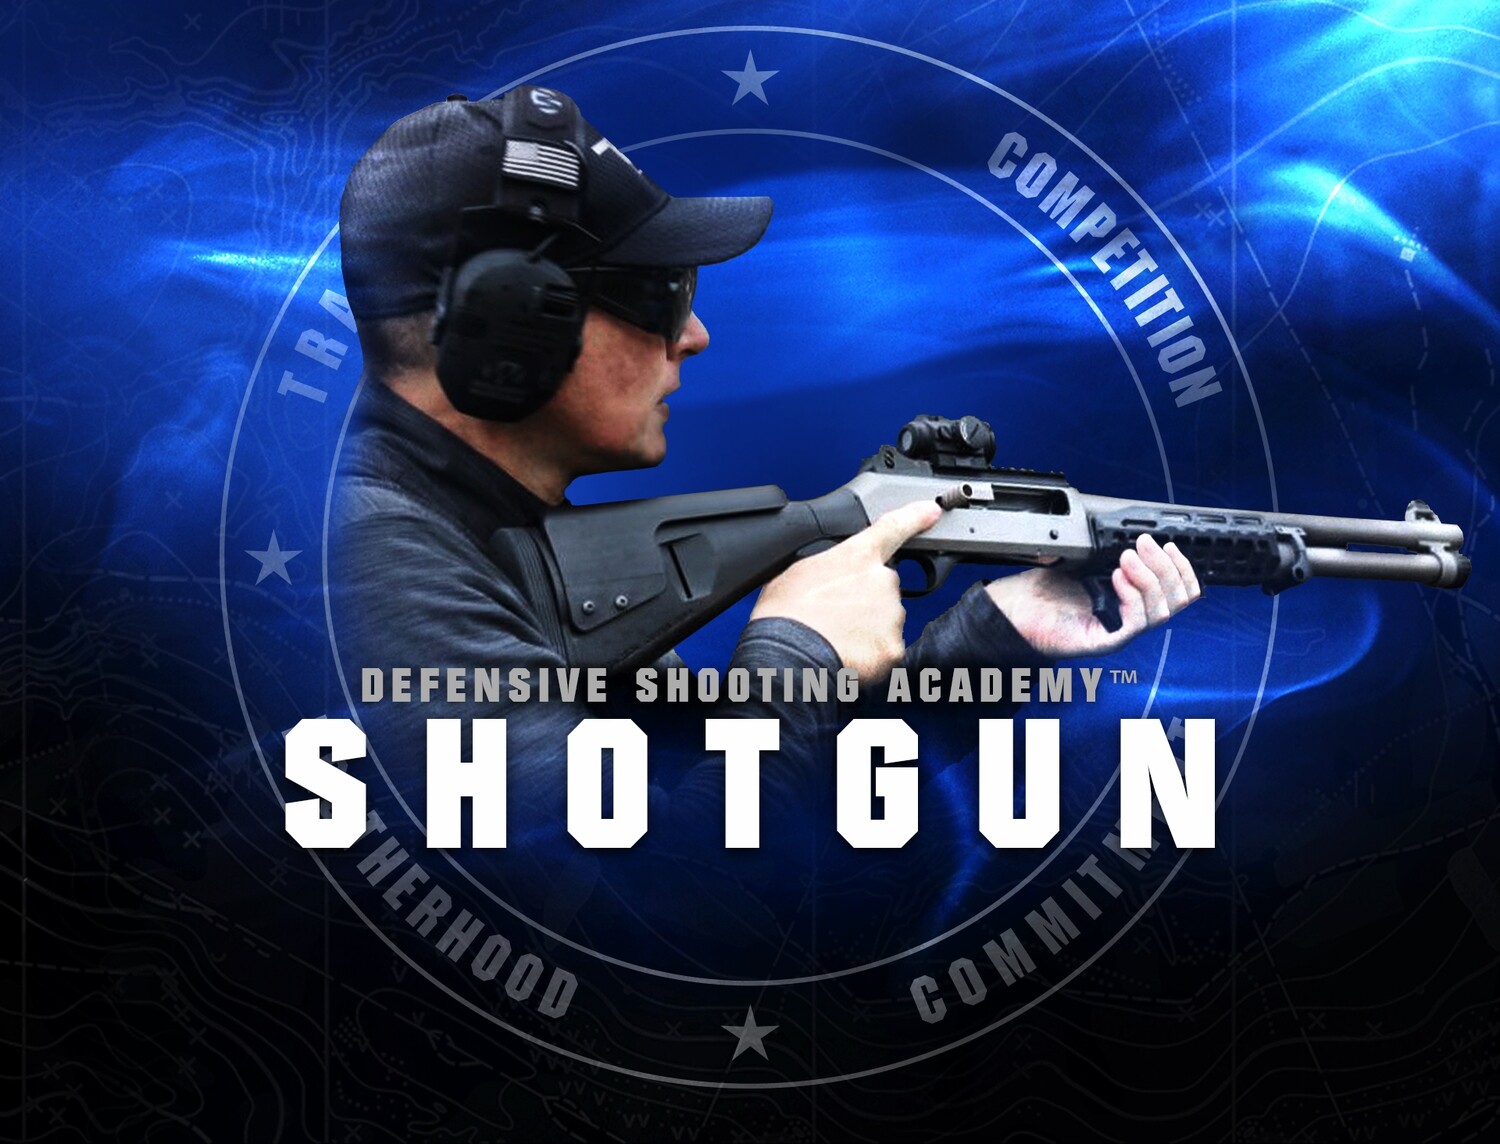 SEMI-AUTO Shotgun Course - 8 HOURS C.L.E.E.T. ACCREDITATION